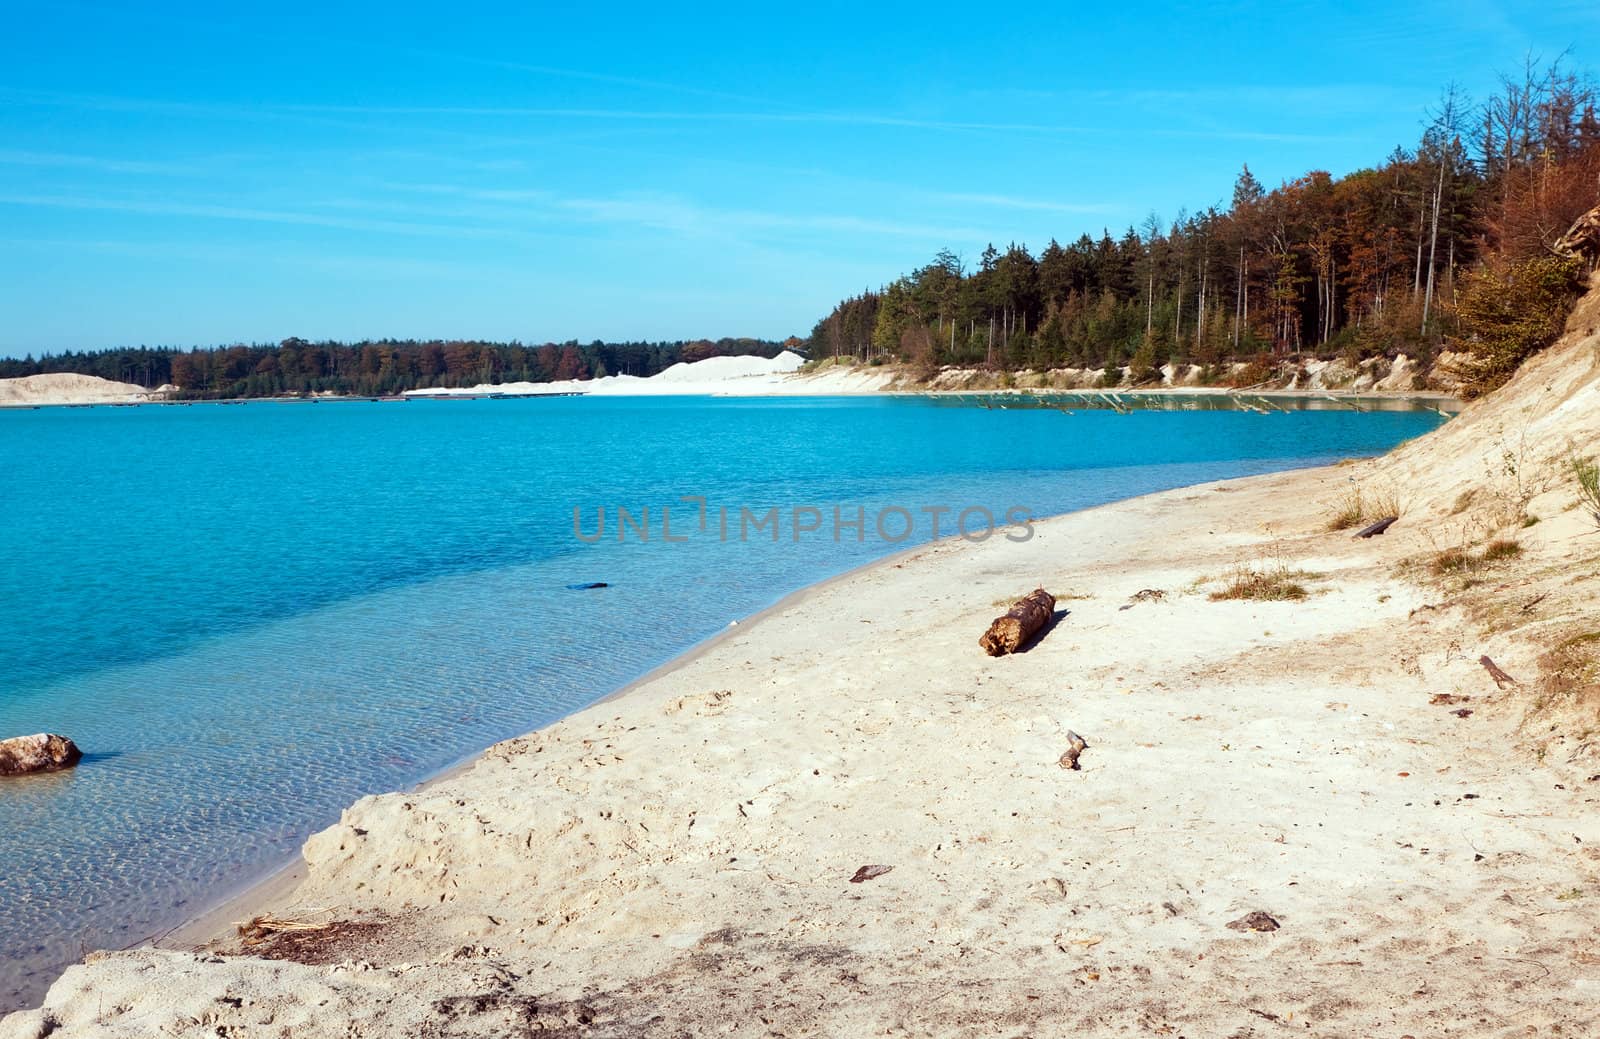 view on big blue lake with sand banks